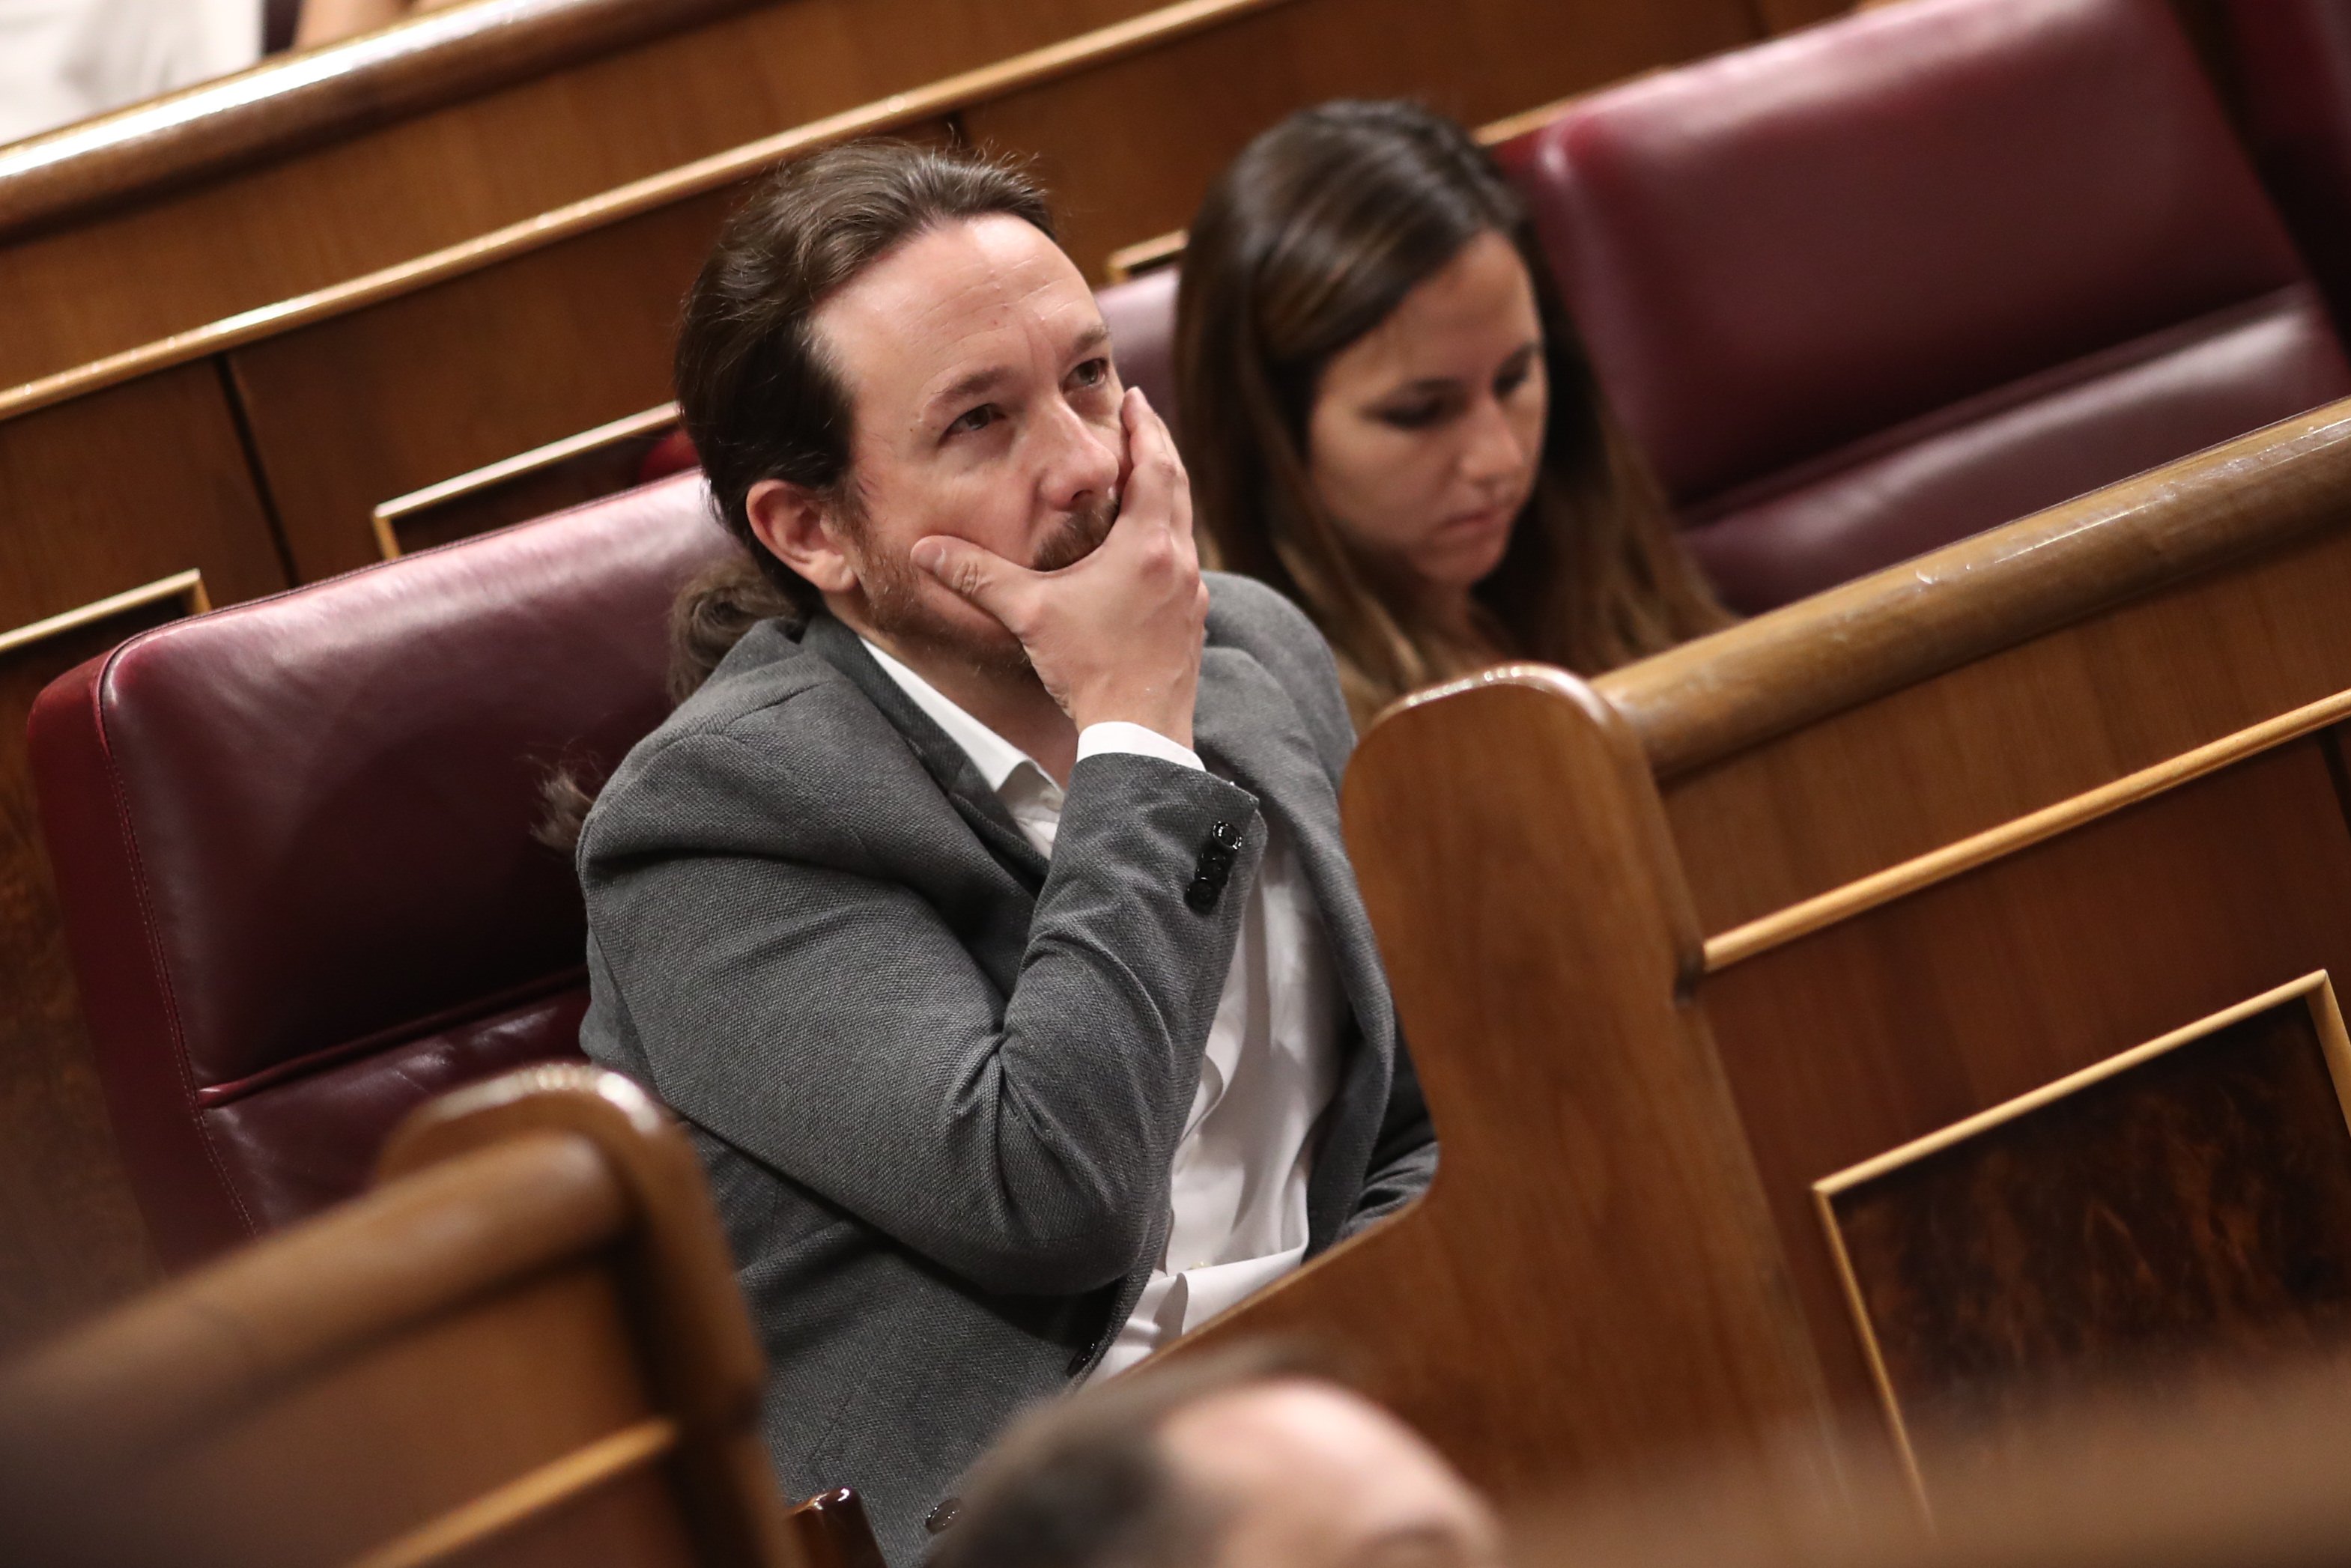 Mainat señala qué excita a Pablo Iglesias: "Les pone cachondos"